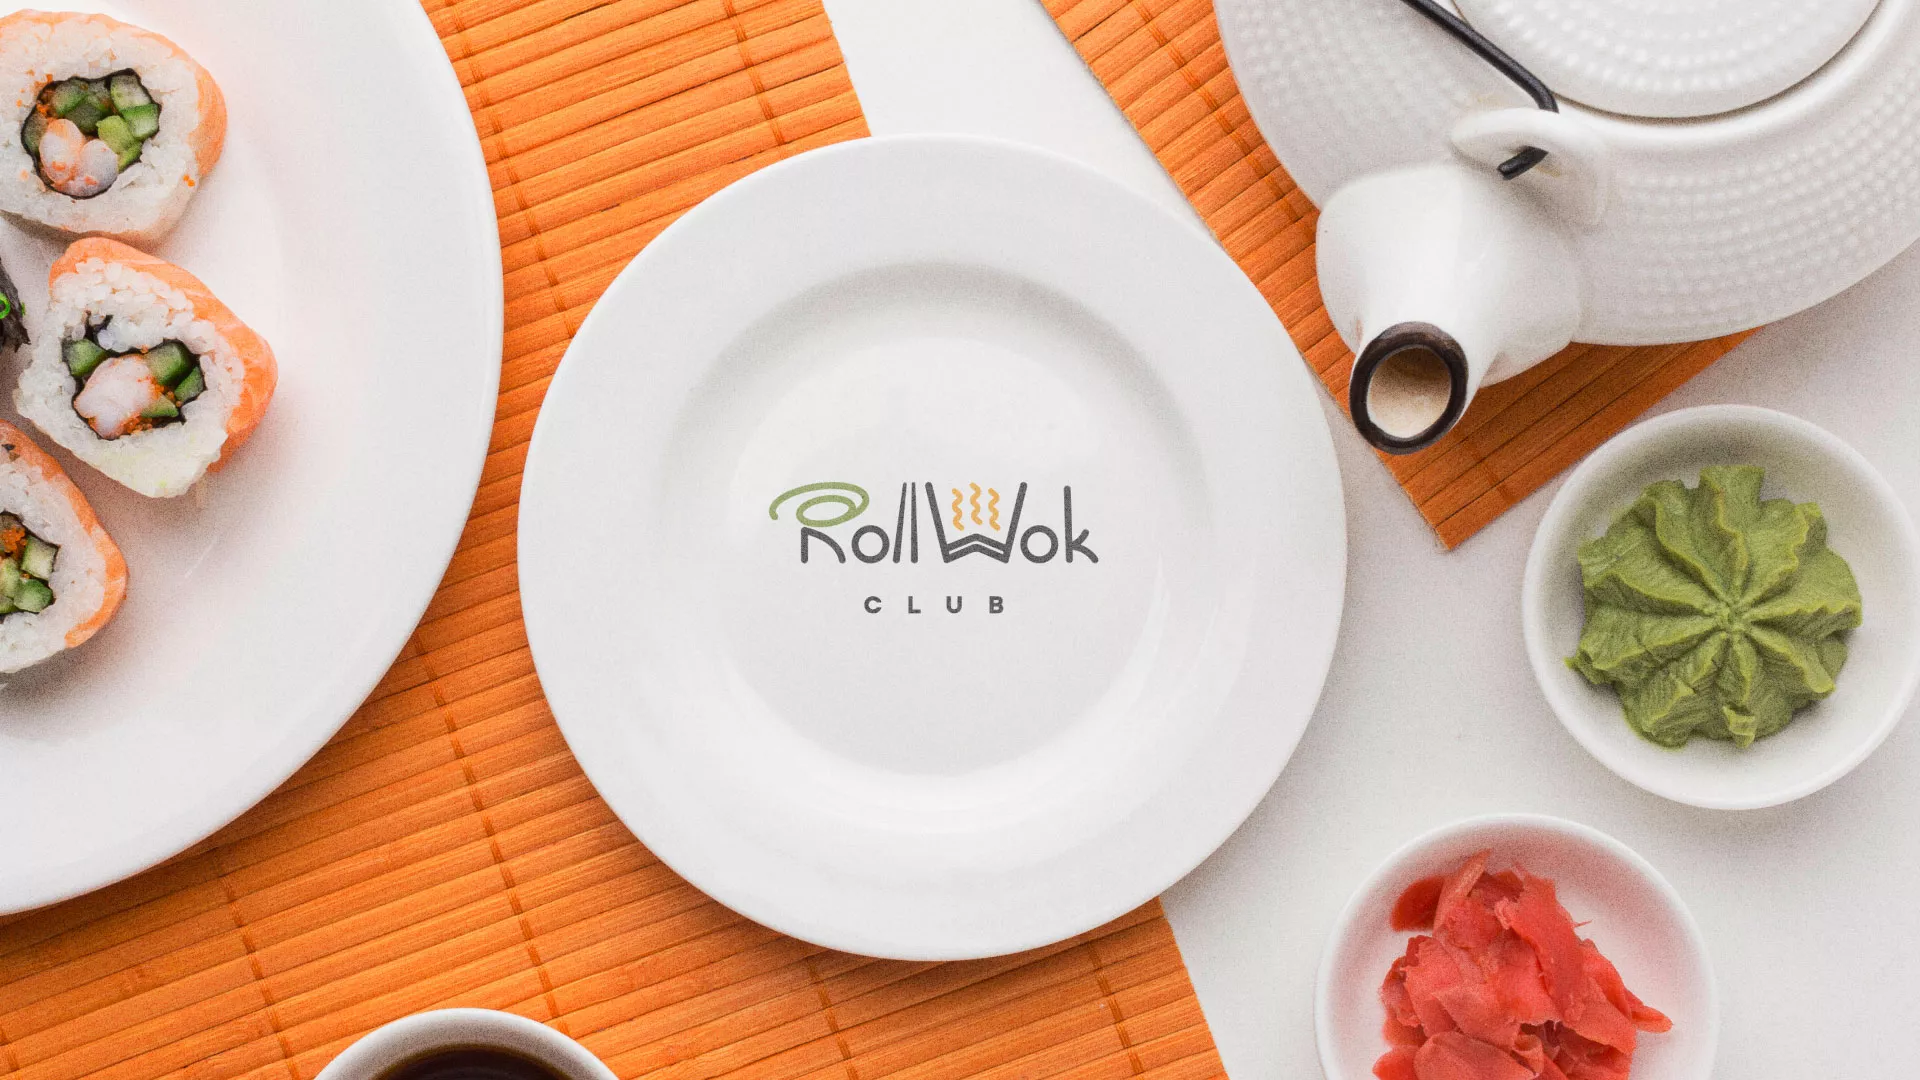 Разработка логотипа и фирменного стиля суши-бара «Roll Wok Club» в Фатеже